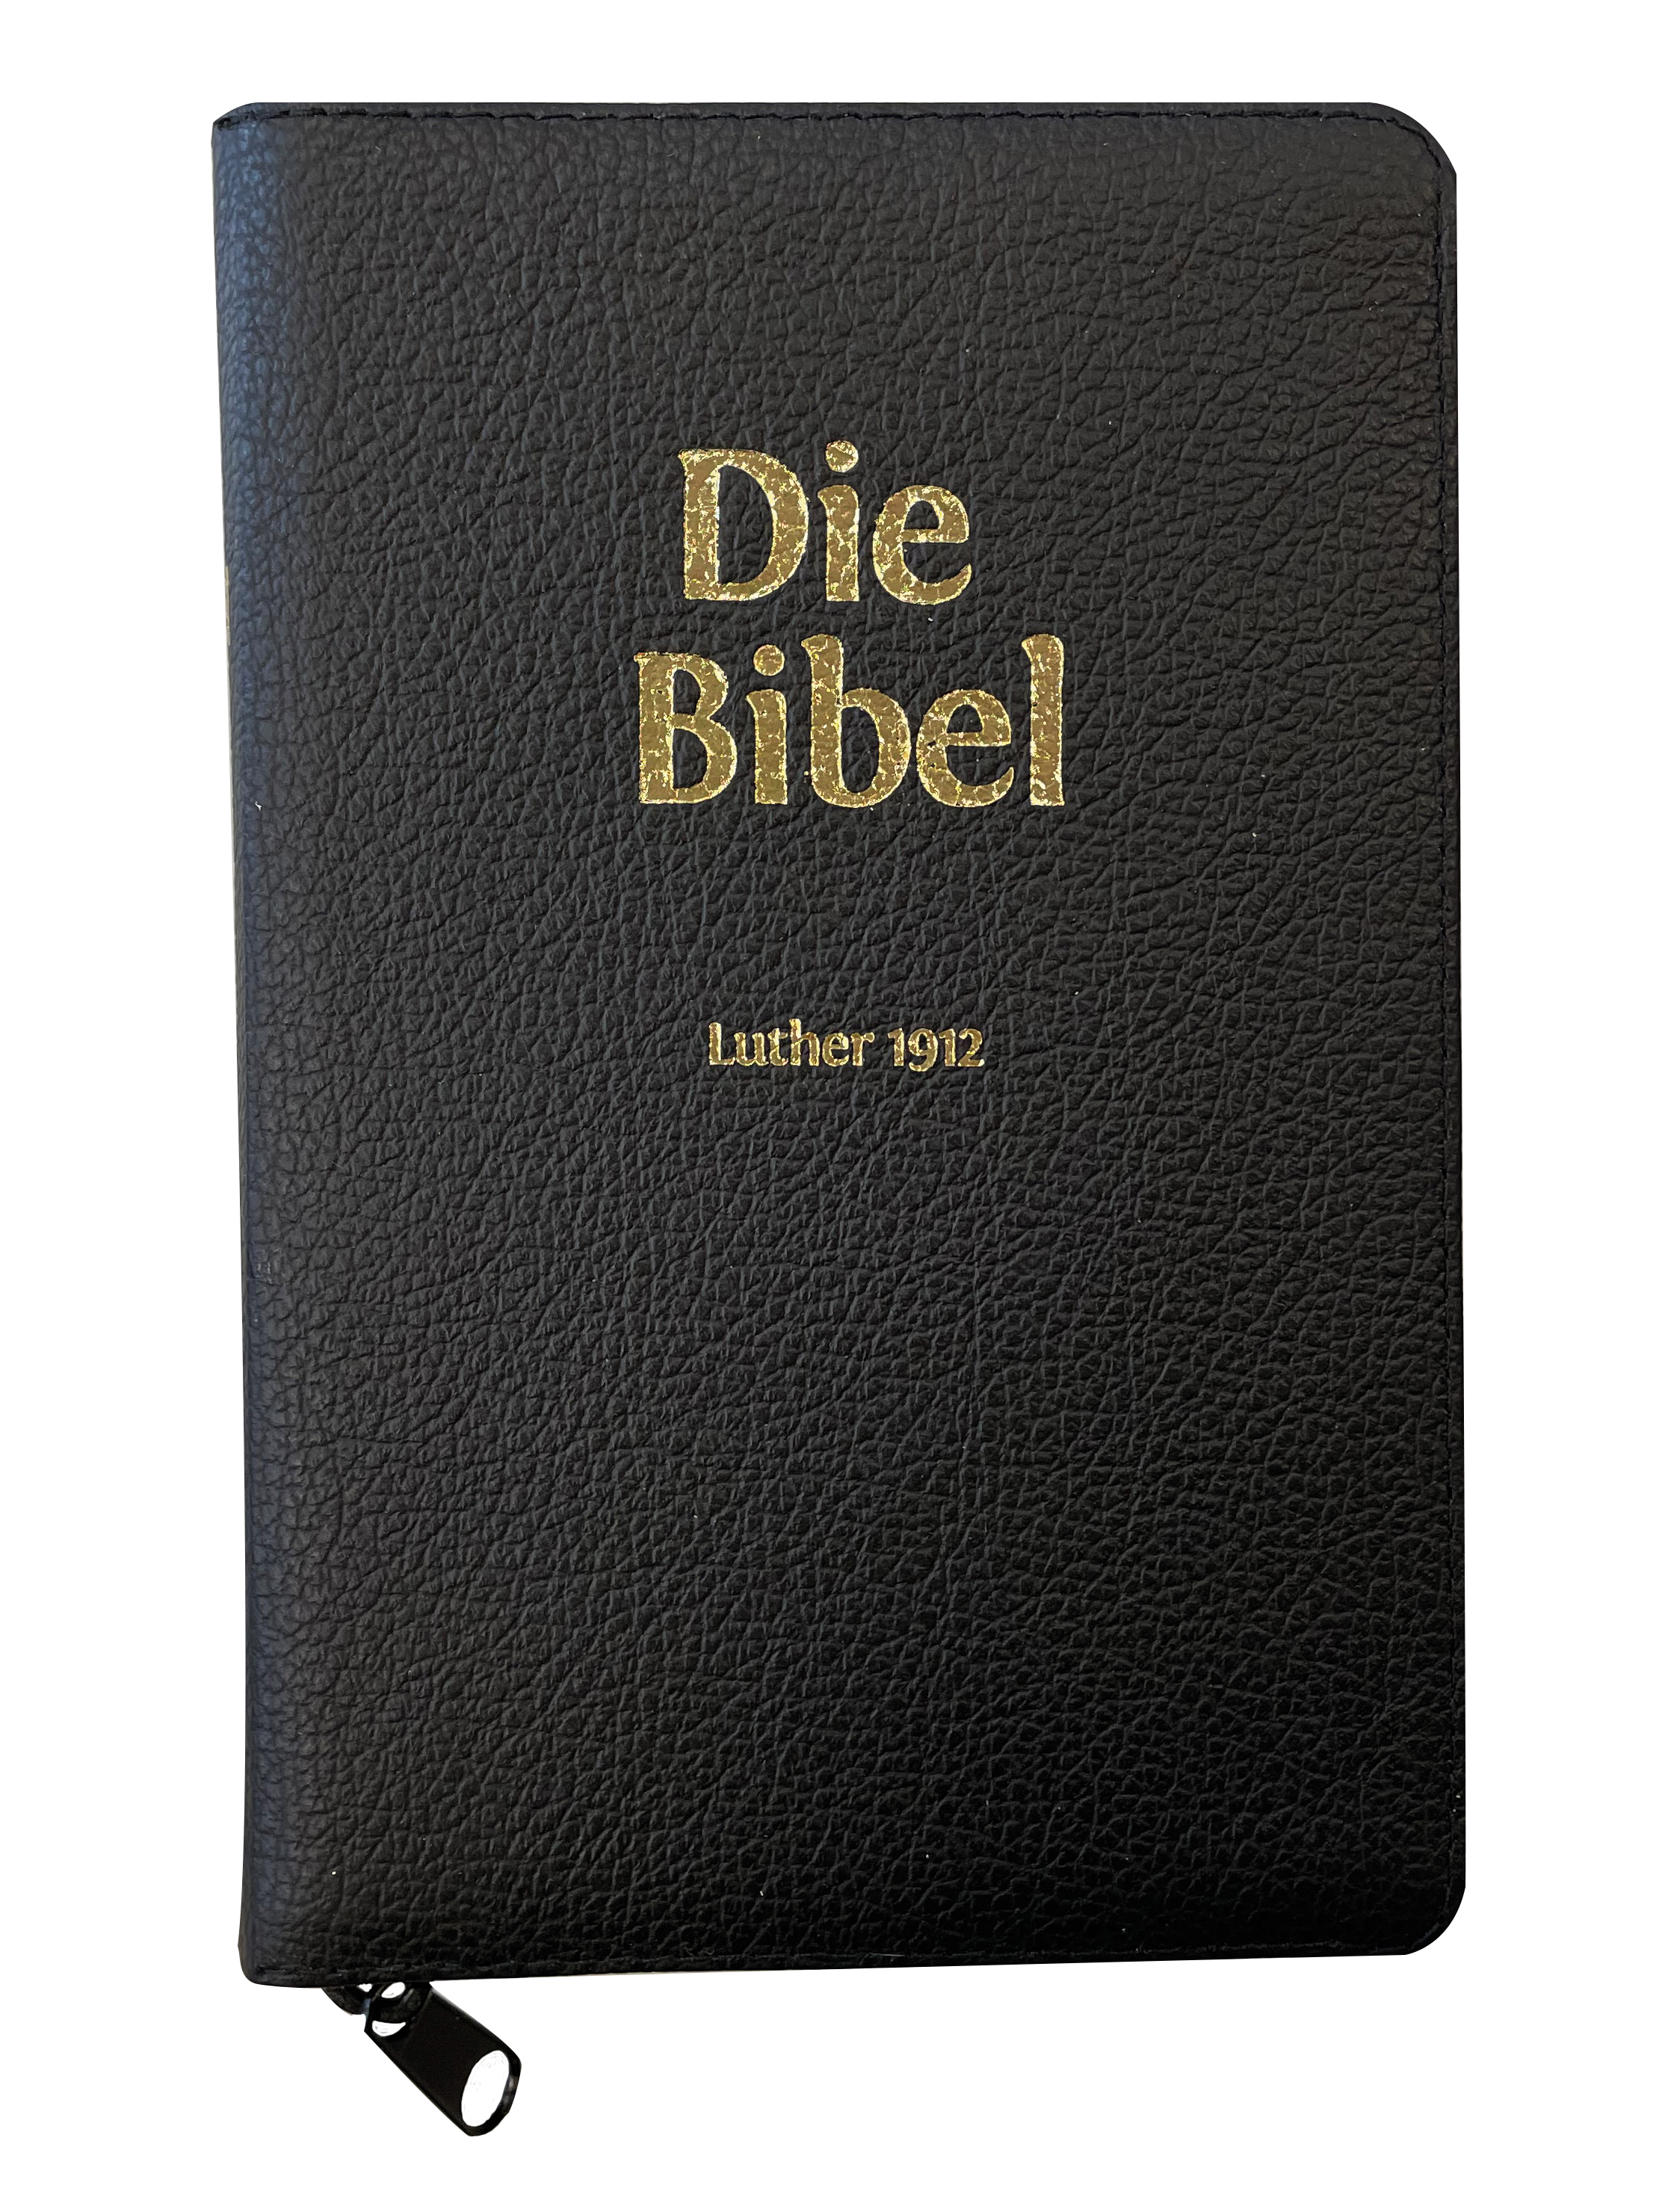 Luther 1912 - Taschenformat